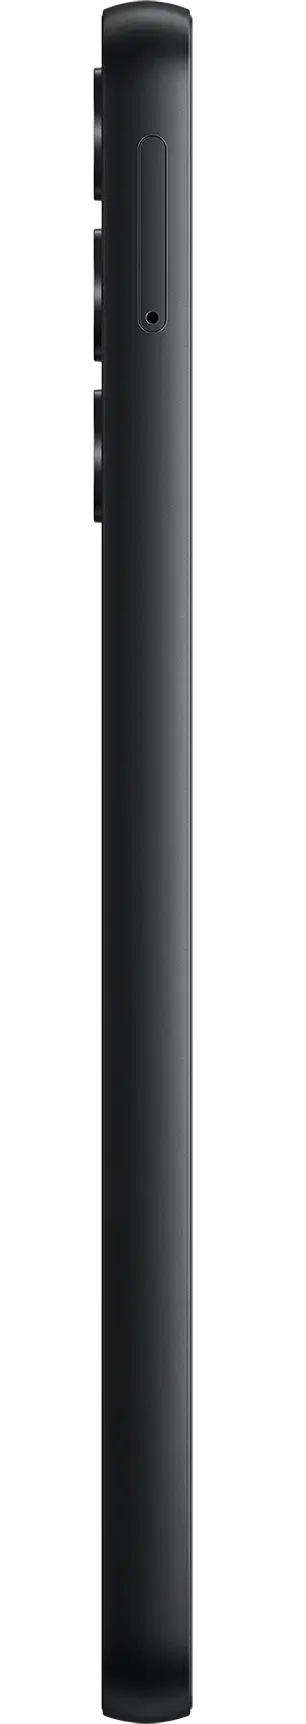 Смартфон Samsung Galaxy A05s 4/64 Гб Черный